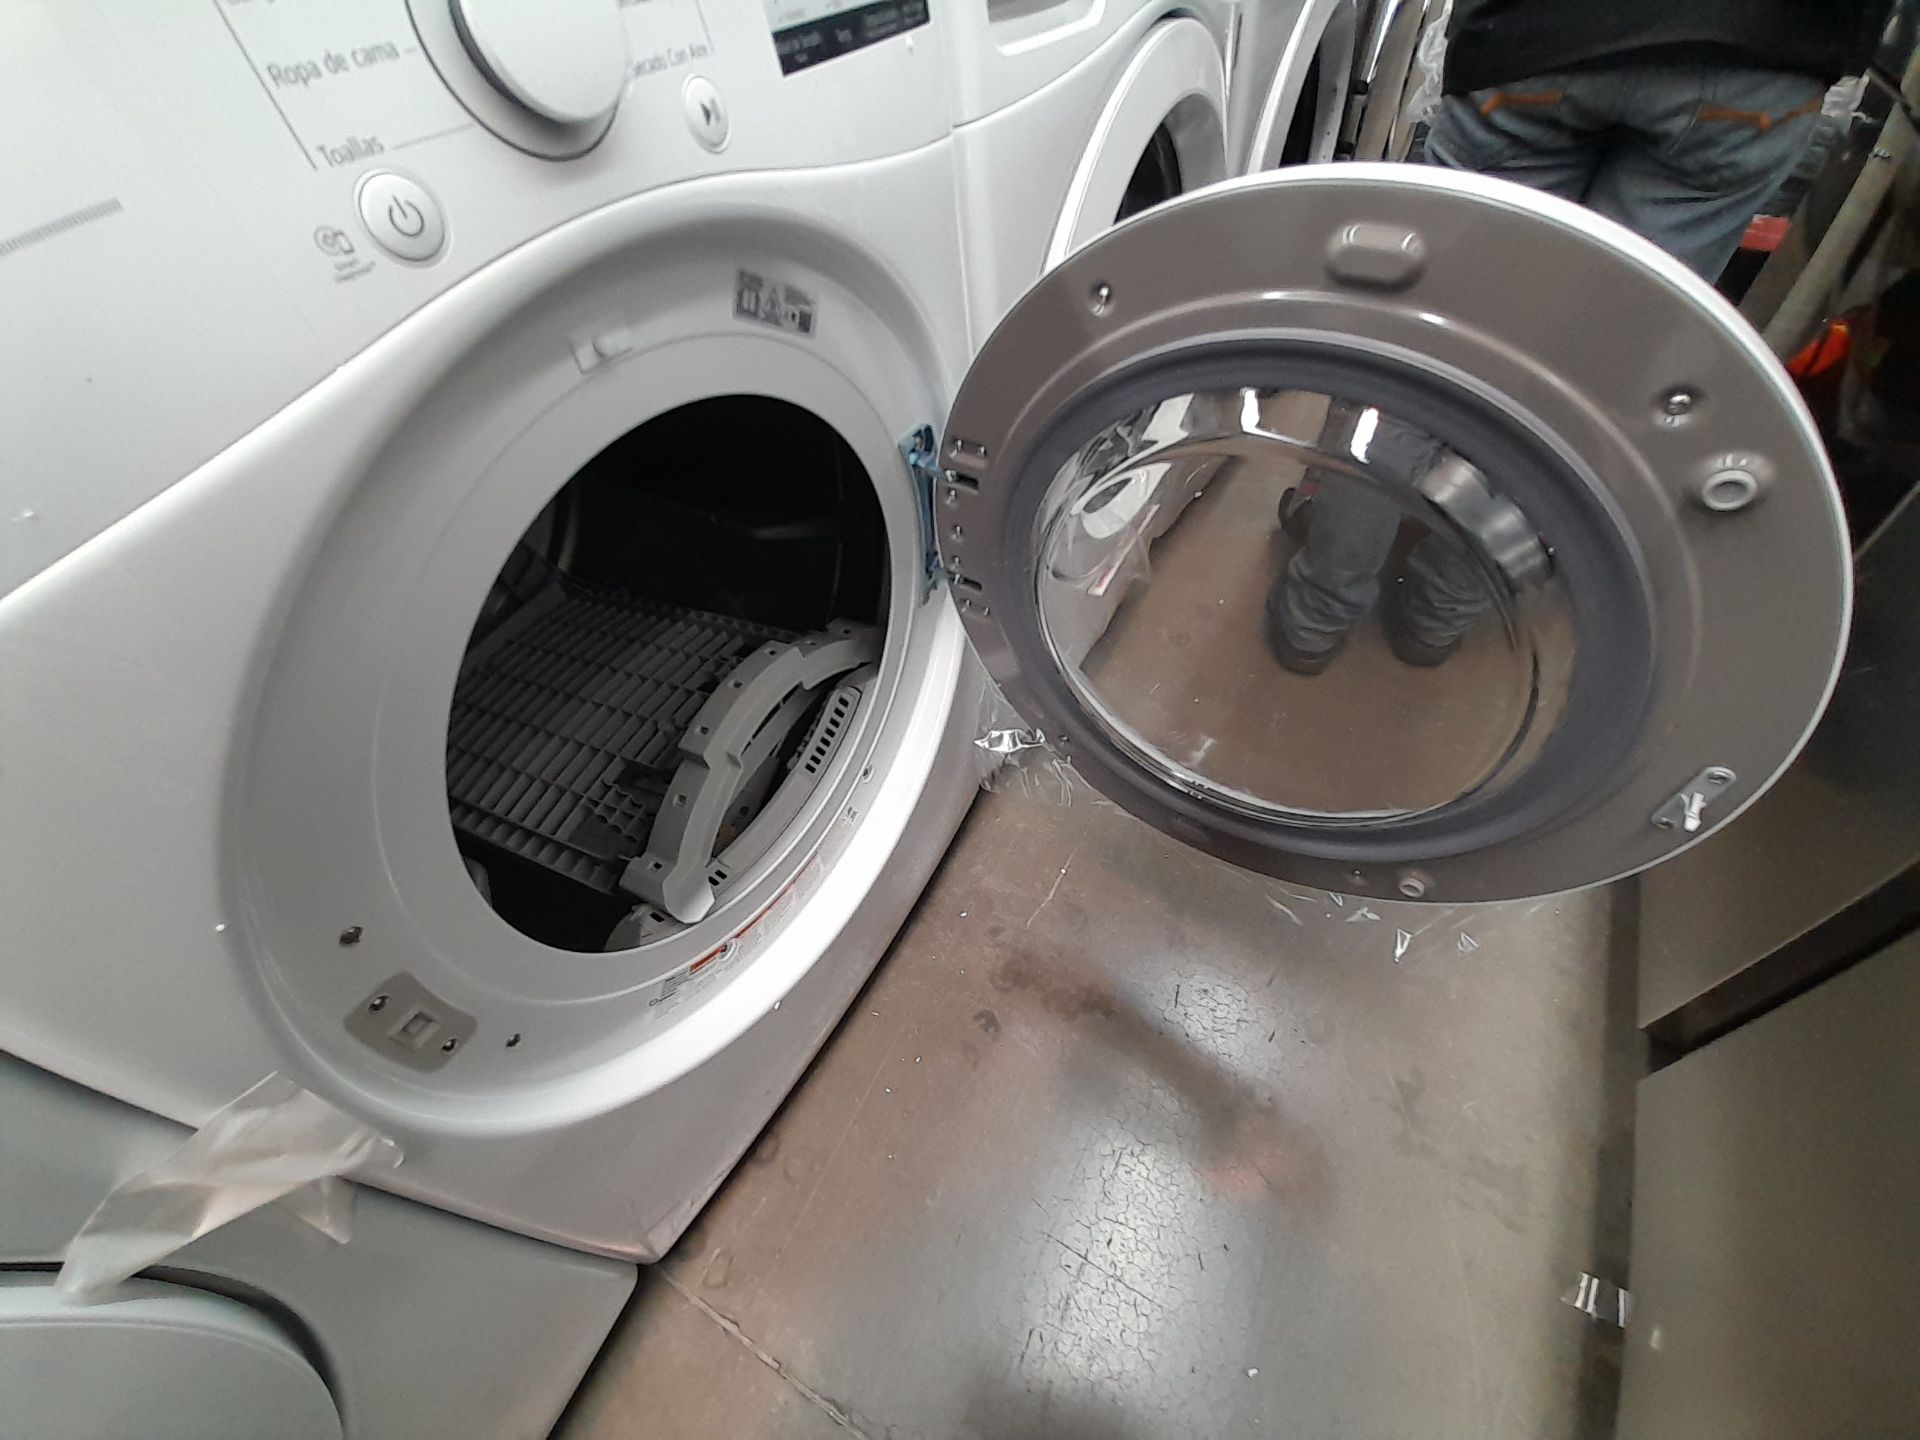 (Nuevo) Lote de 1 lavadora y 1 secadora contiene: 1 lavadora de 20 K, Marca LG, Modelo WN20WV26W, S - Image 5 of 6